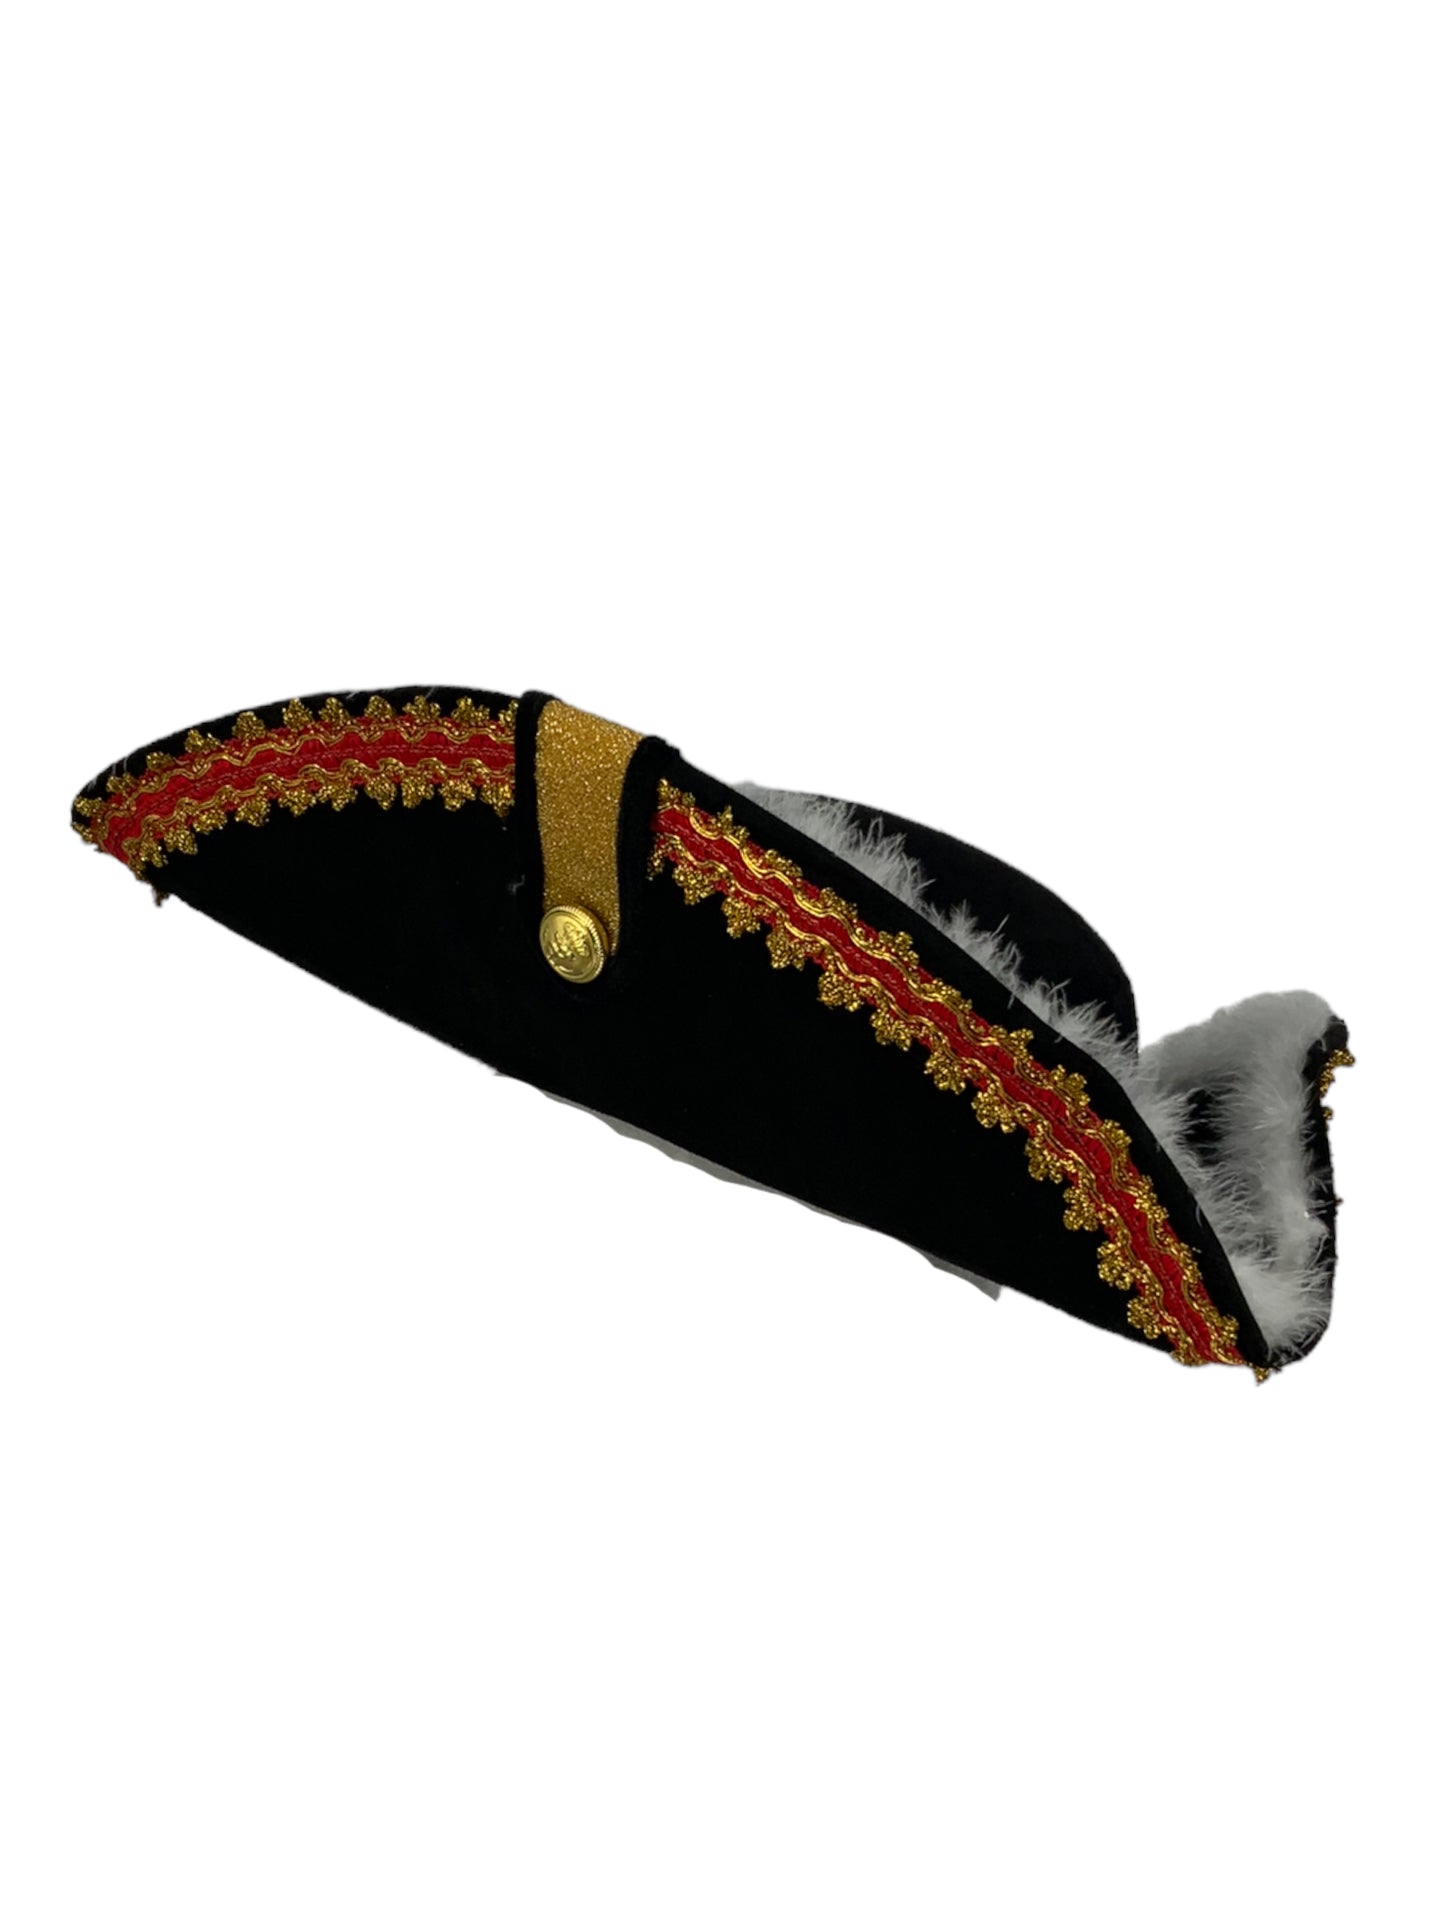 Pirate Hat - Gov'nah